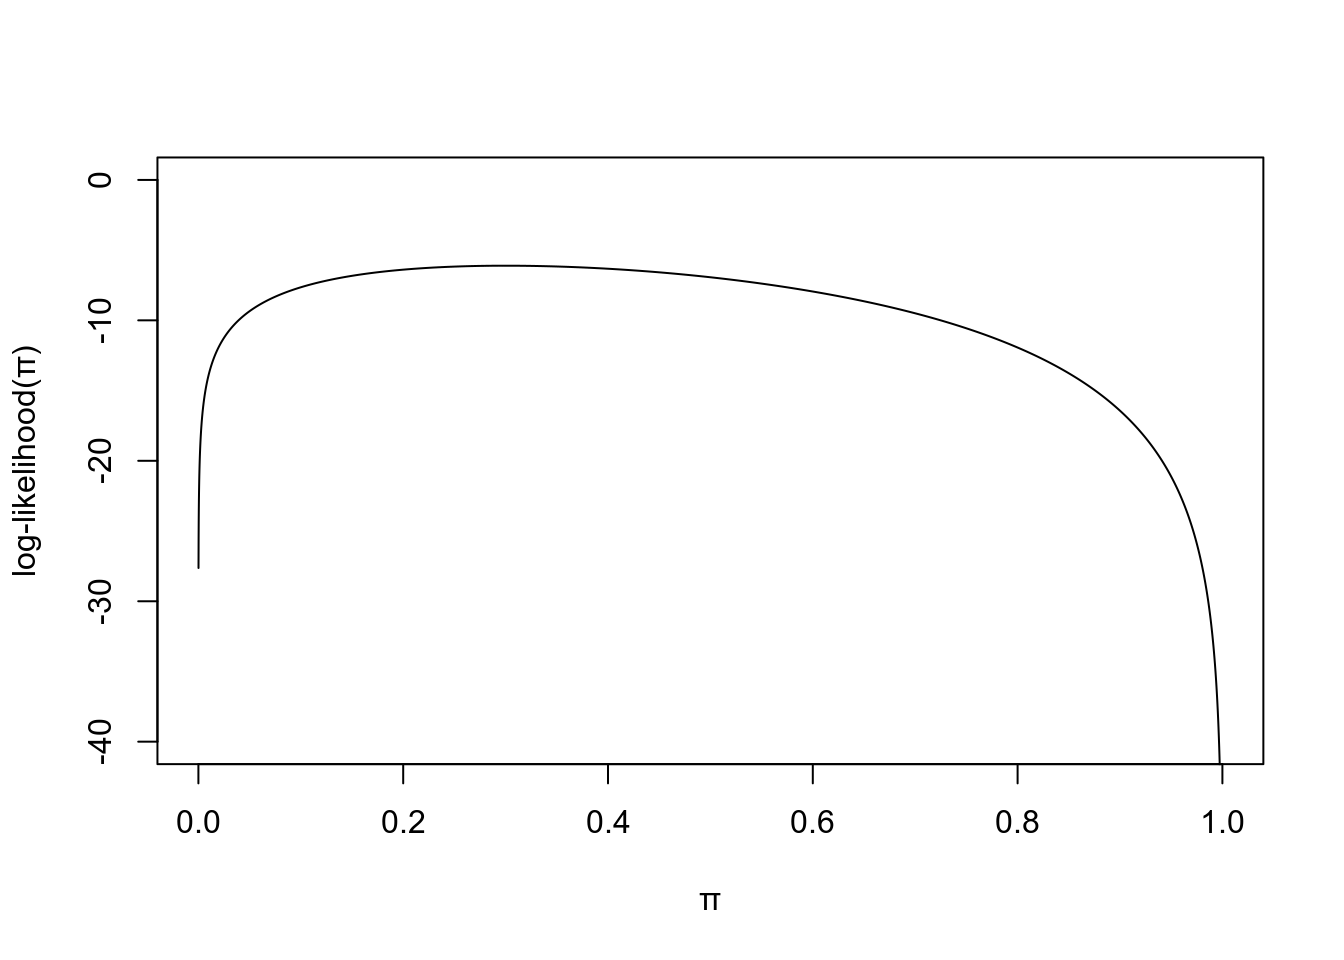 Log-likelihood for binomial model.